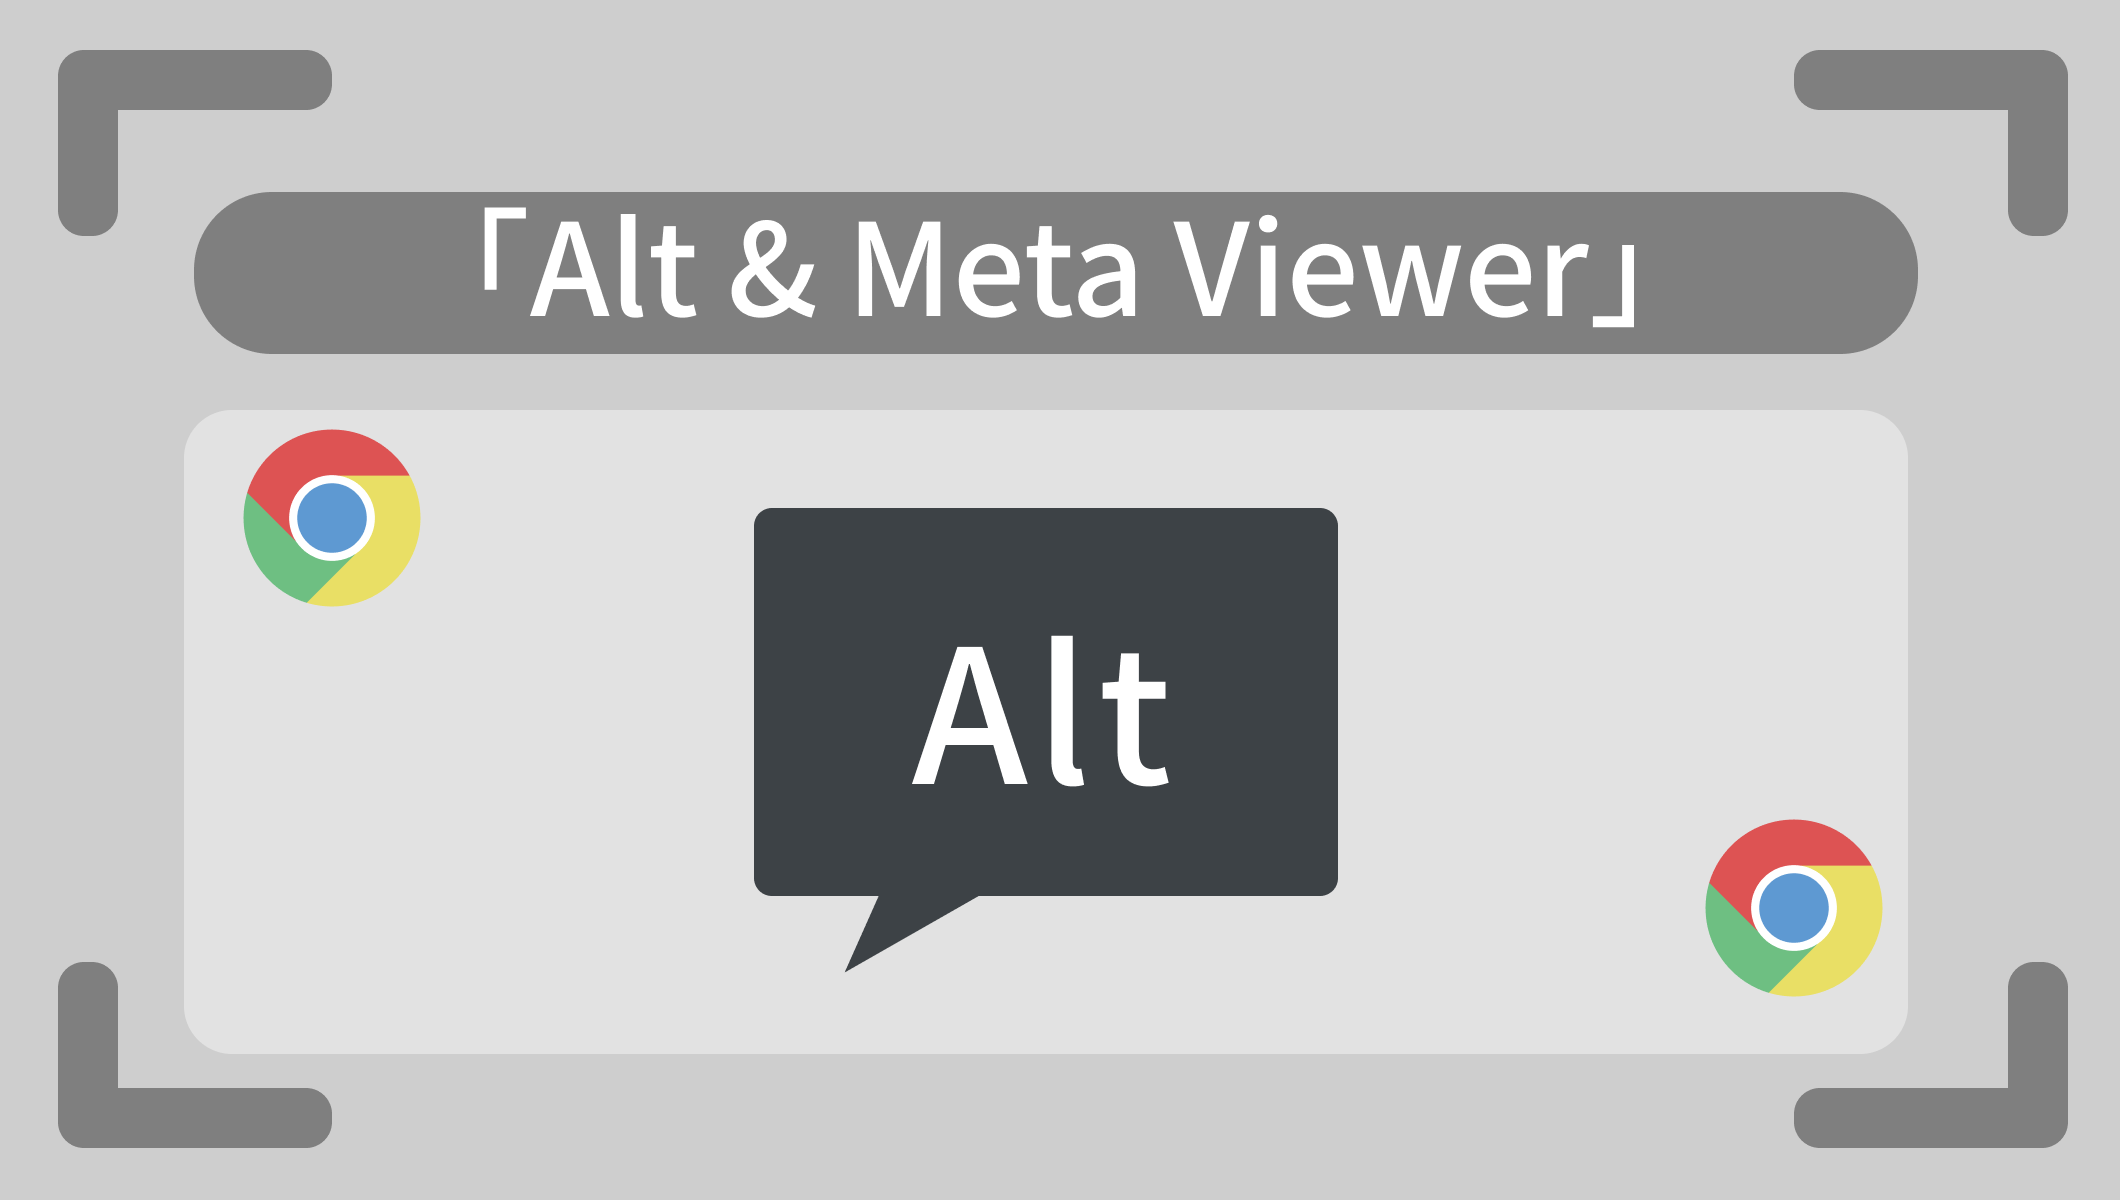 画像にAltが設定されているか、また設定されているAltを見る方法。「Alt & Meta Viewer」